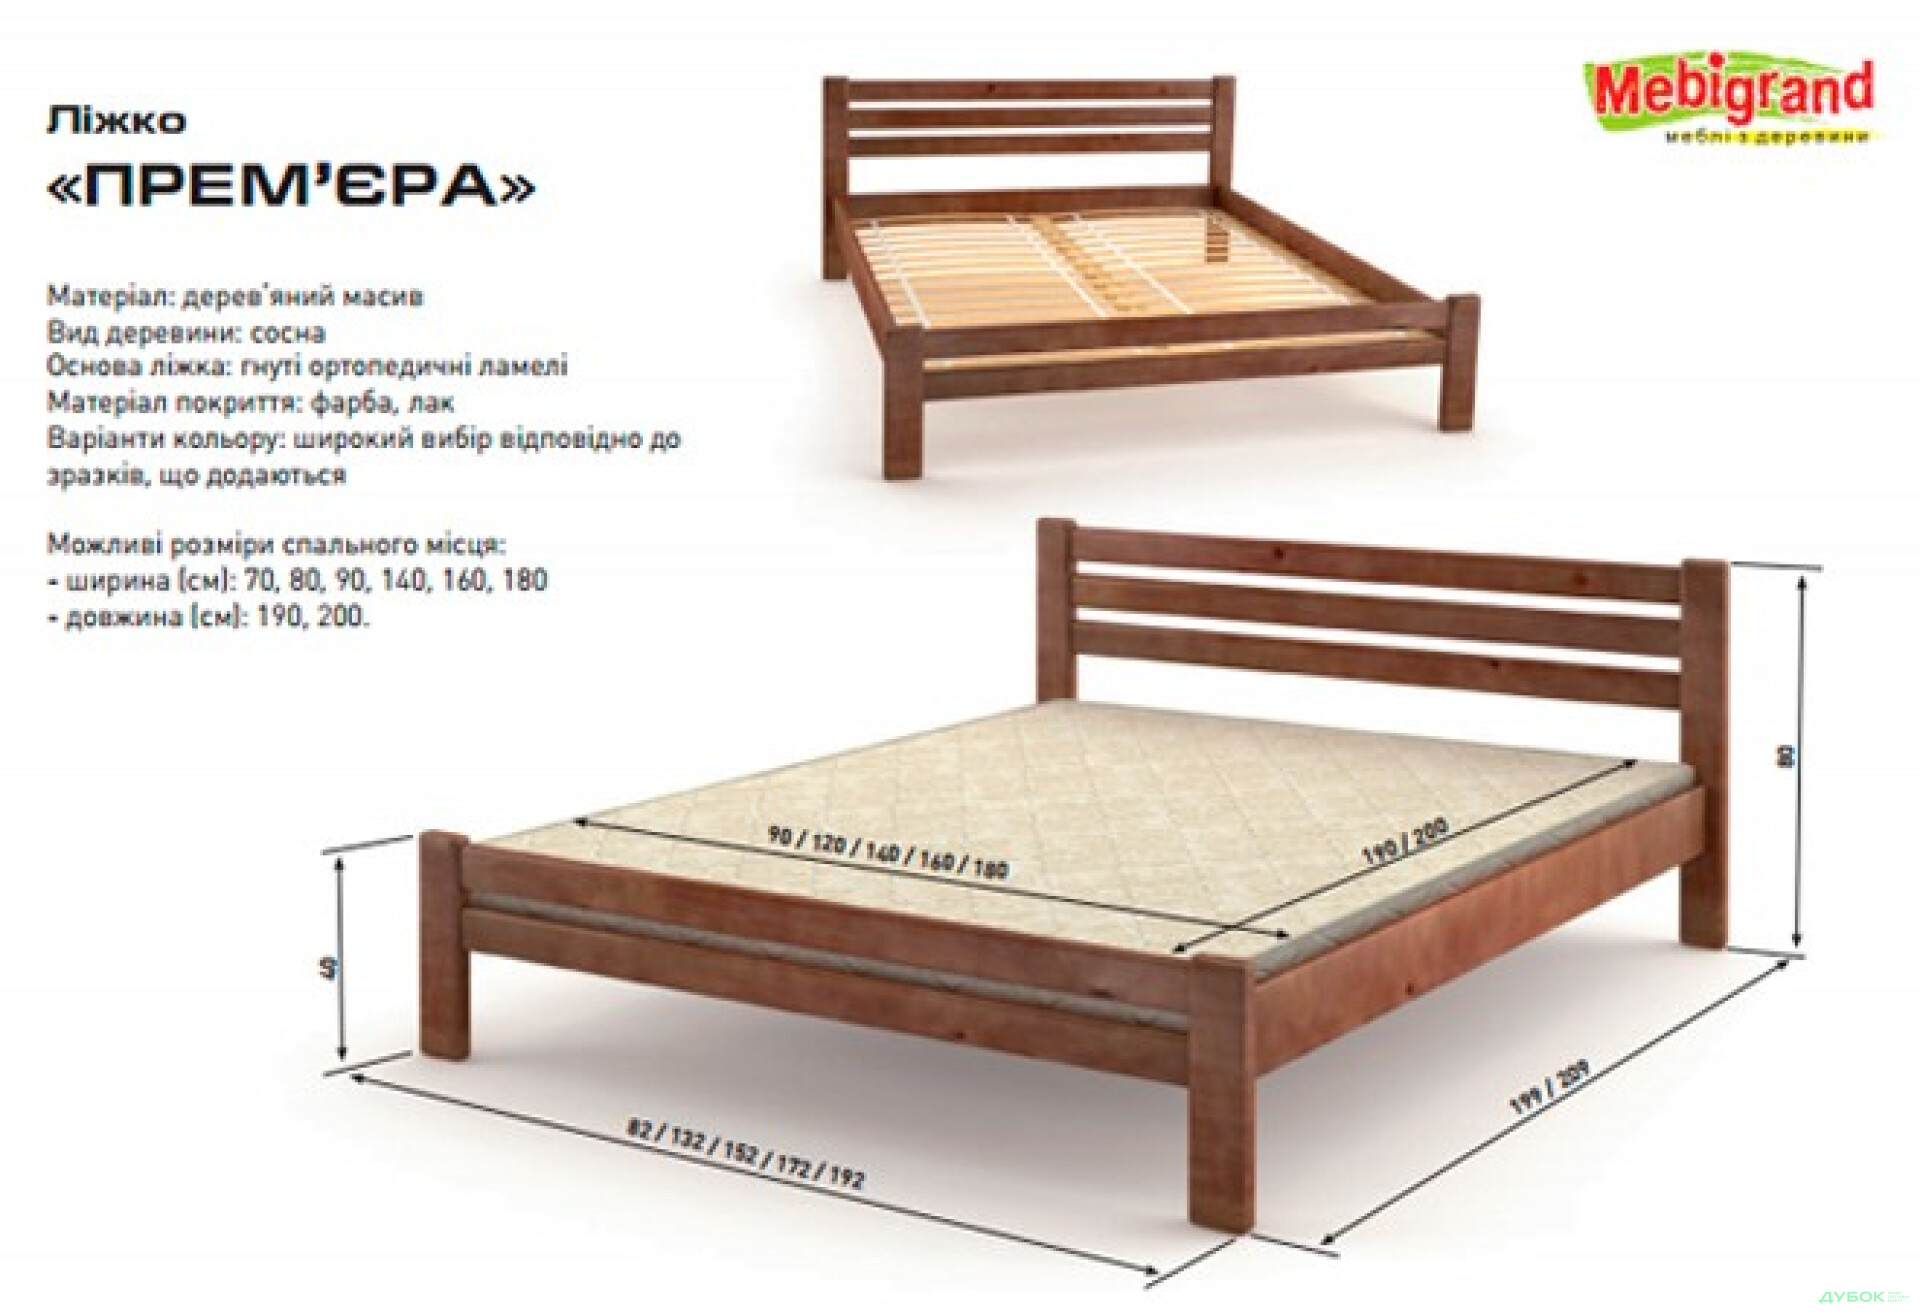 Фото 2 - Ліжко двоспальне дерев'яне Прем’єра 160 Mebigrand